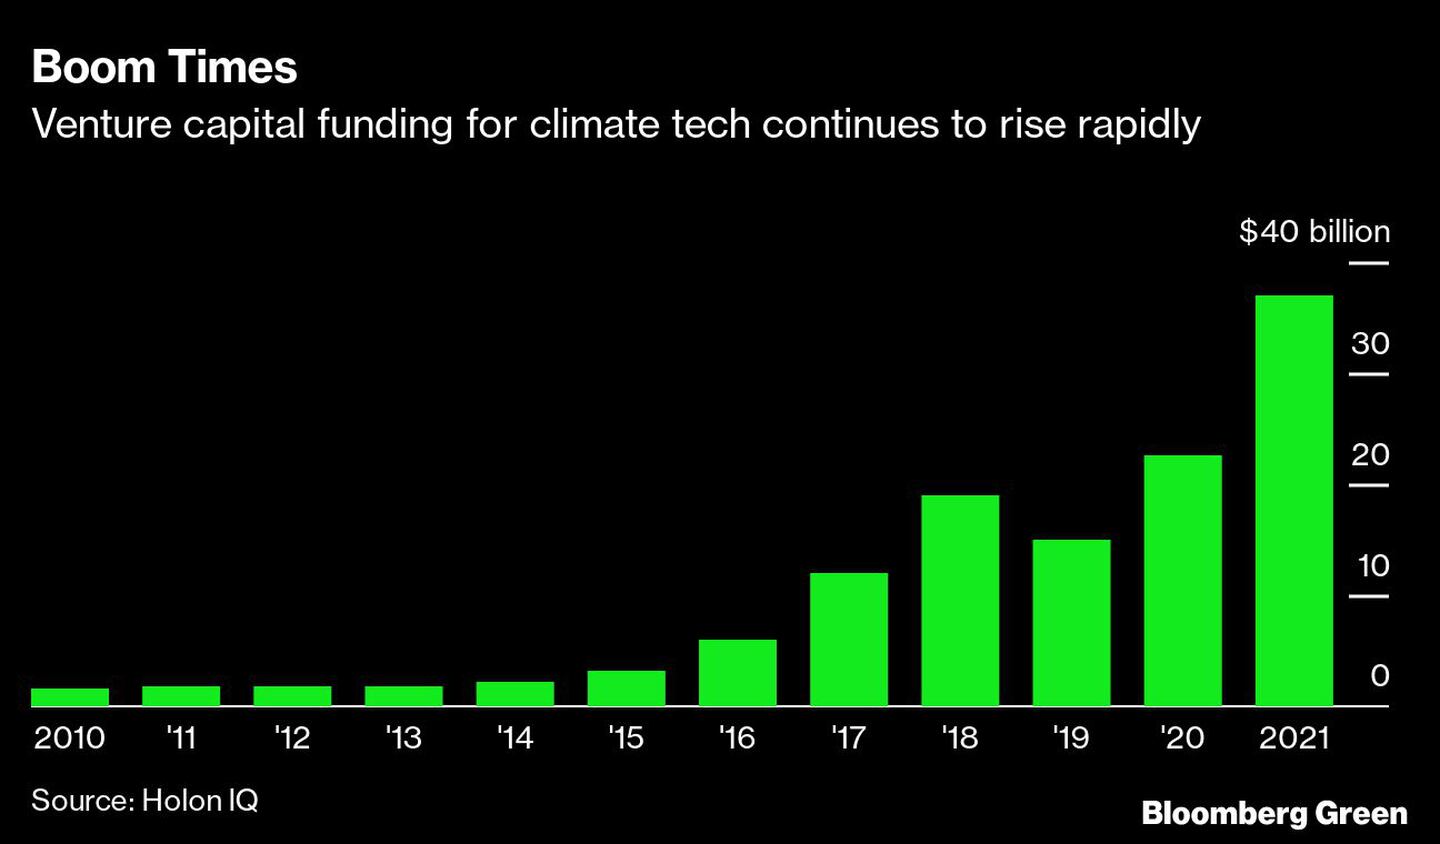 La financiación de capital riesgo para la tecnología climática sigue aumentando rápidamente.dfd